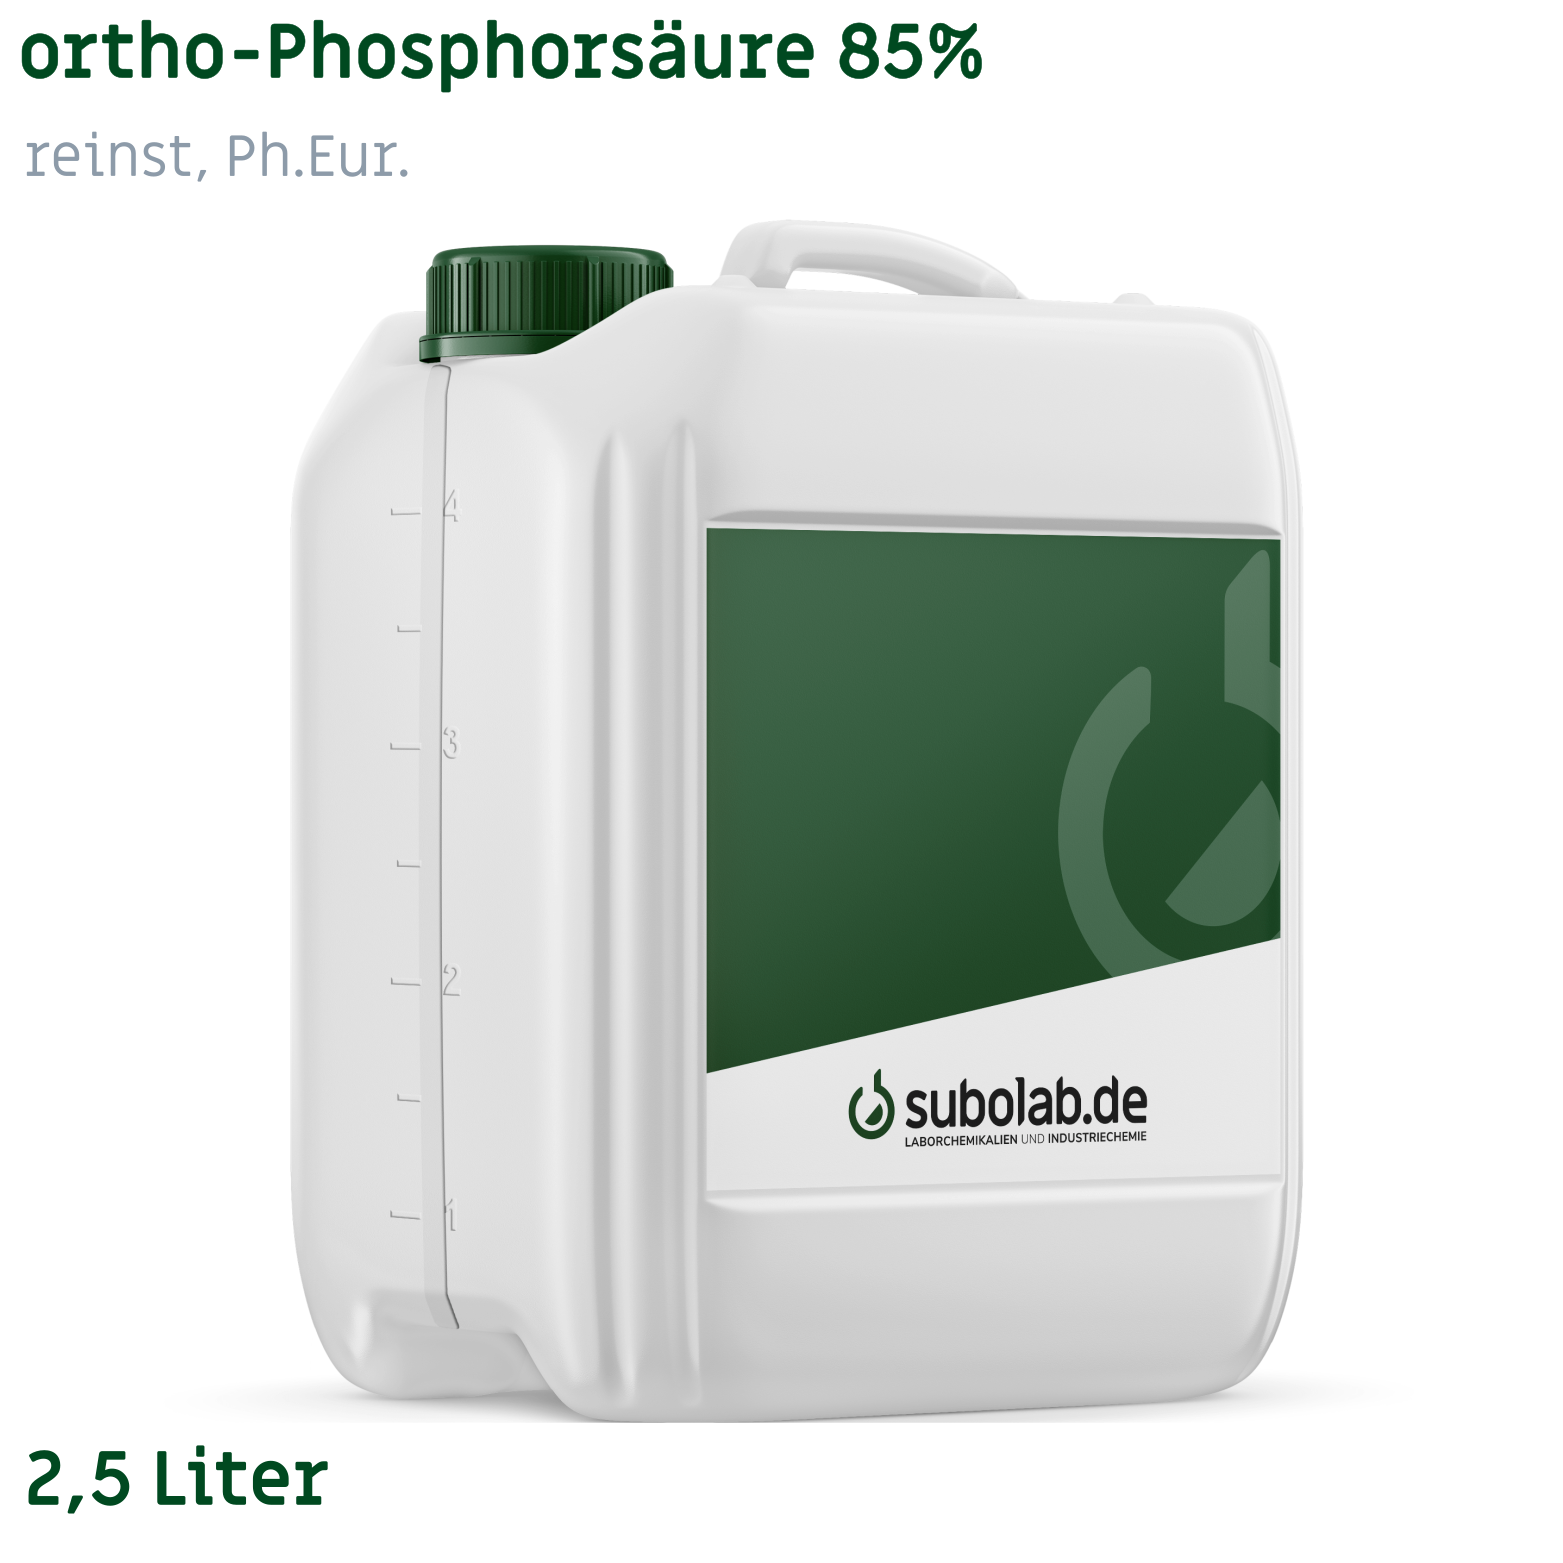 Bild von ortho-Phosphorsäure 85% reinst, Ph.Eur. (2,5 Liter)